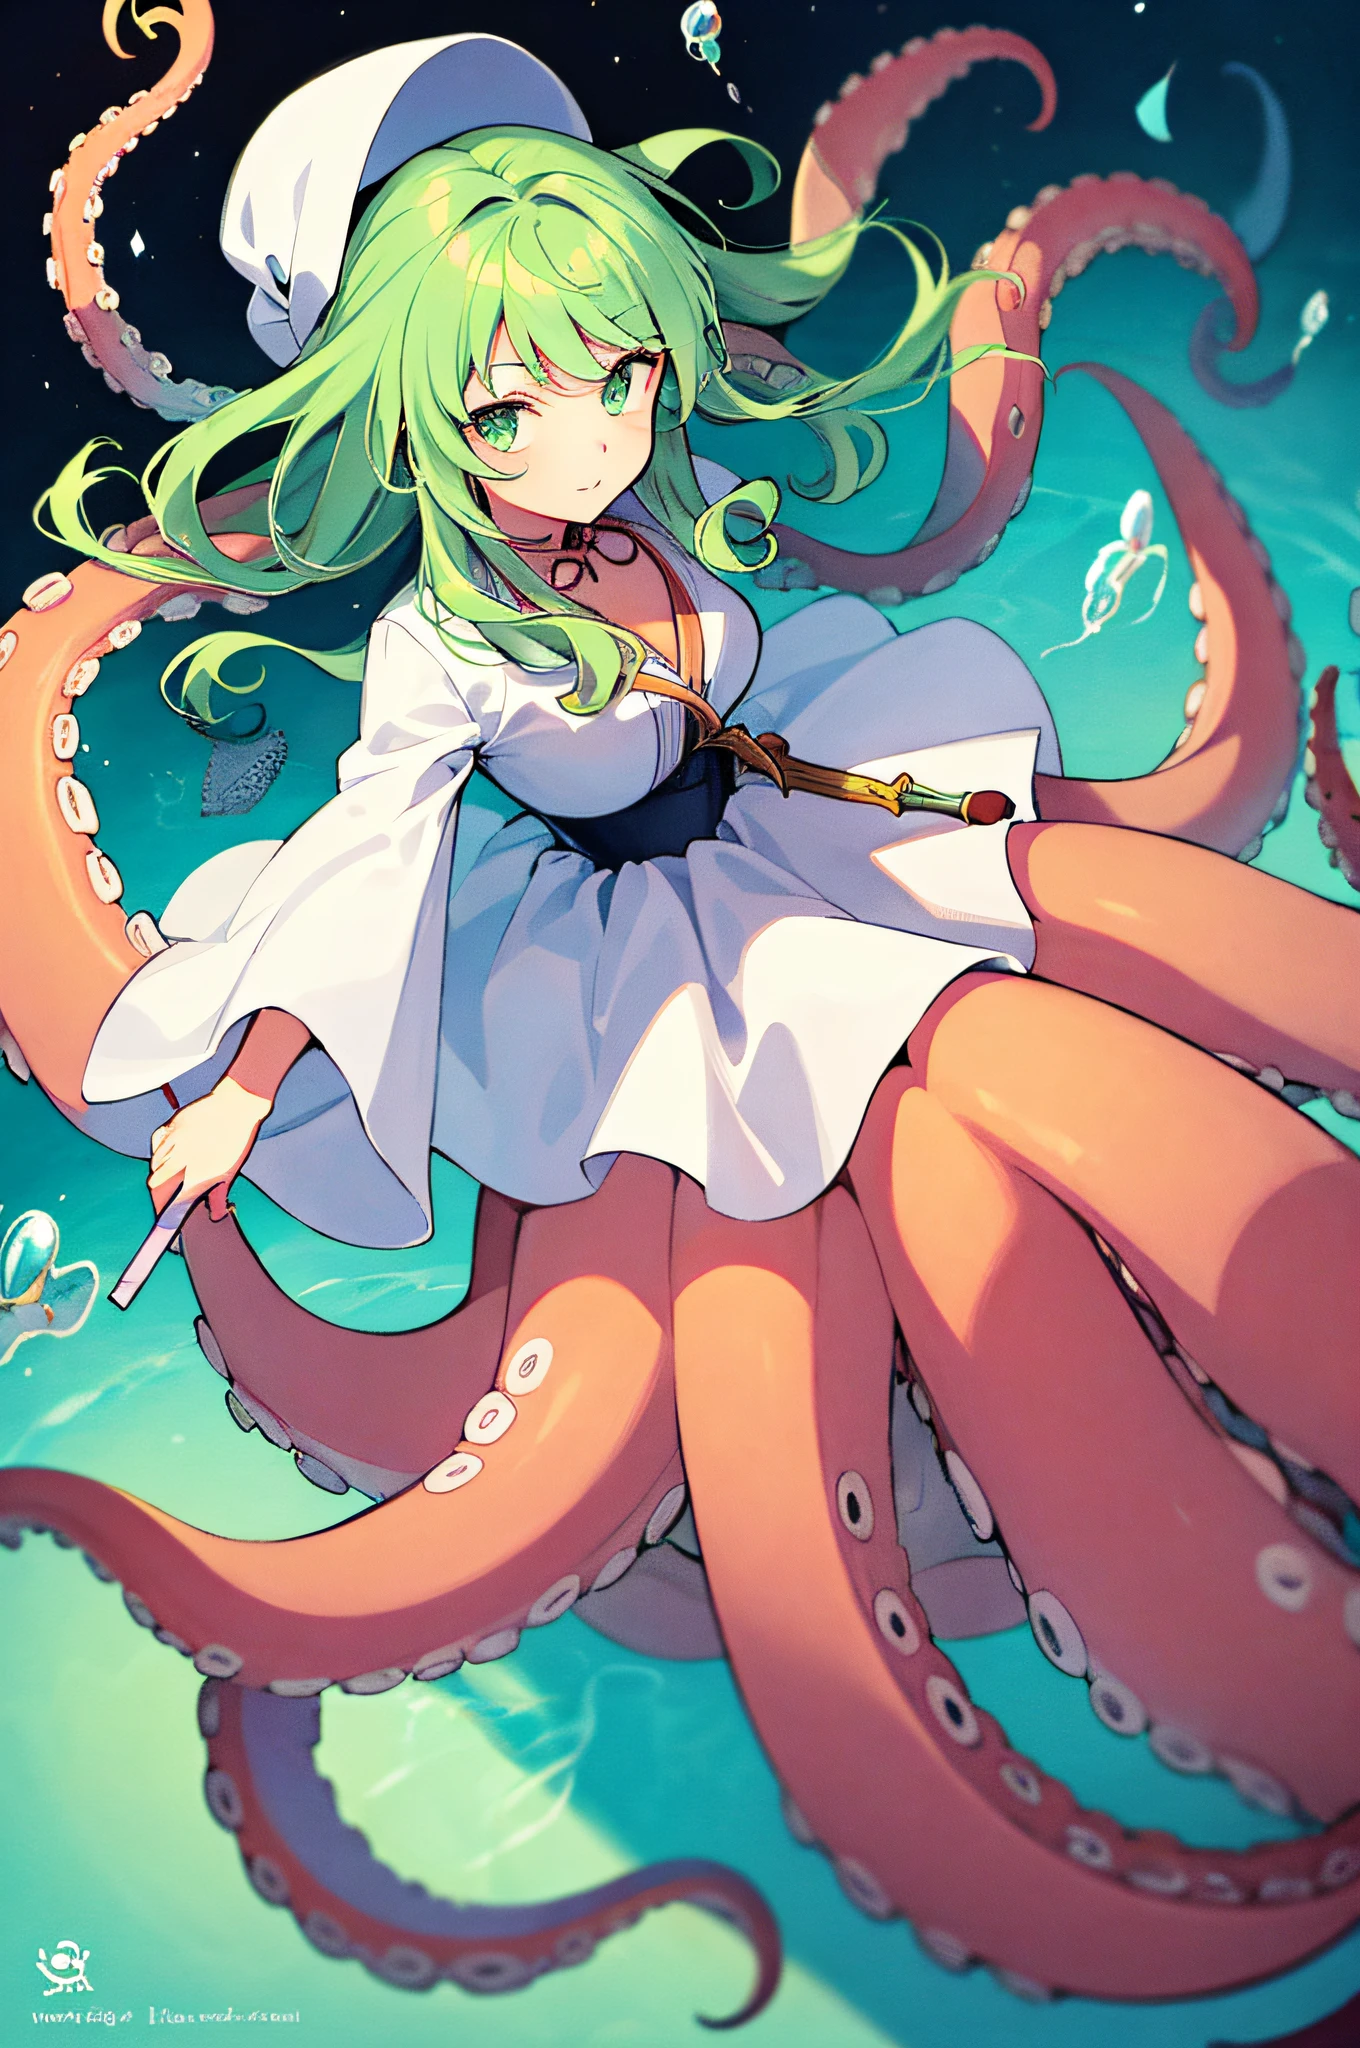 Anime-Mädchen mit hellgrünen Haaren und einem weißen Kleid, das einen Zauberstab hält, Oktopus-Göttin, Skylla, Anime-Monstermädchen, Meisterwerk, beste Qualität,